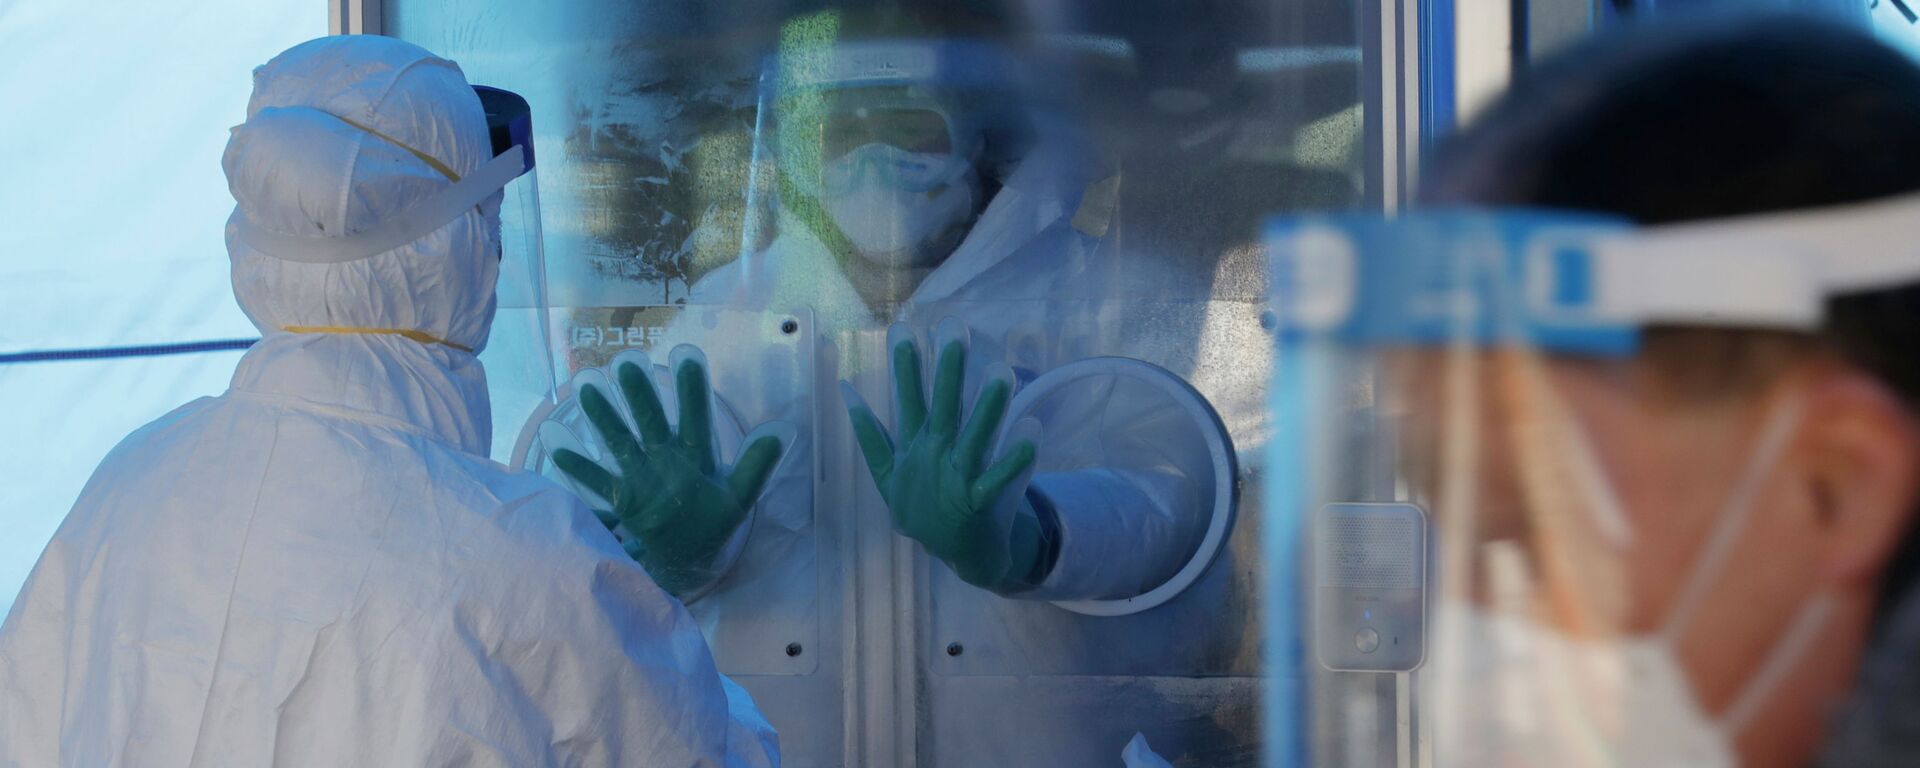 Медики в защитных костюмах готовятся проводить ПЦР-тесты на коронавирус в экспресс-лаборатории  - Sputnik Казахстан, 1920, 24.02.2021